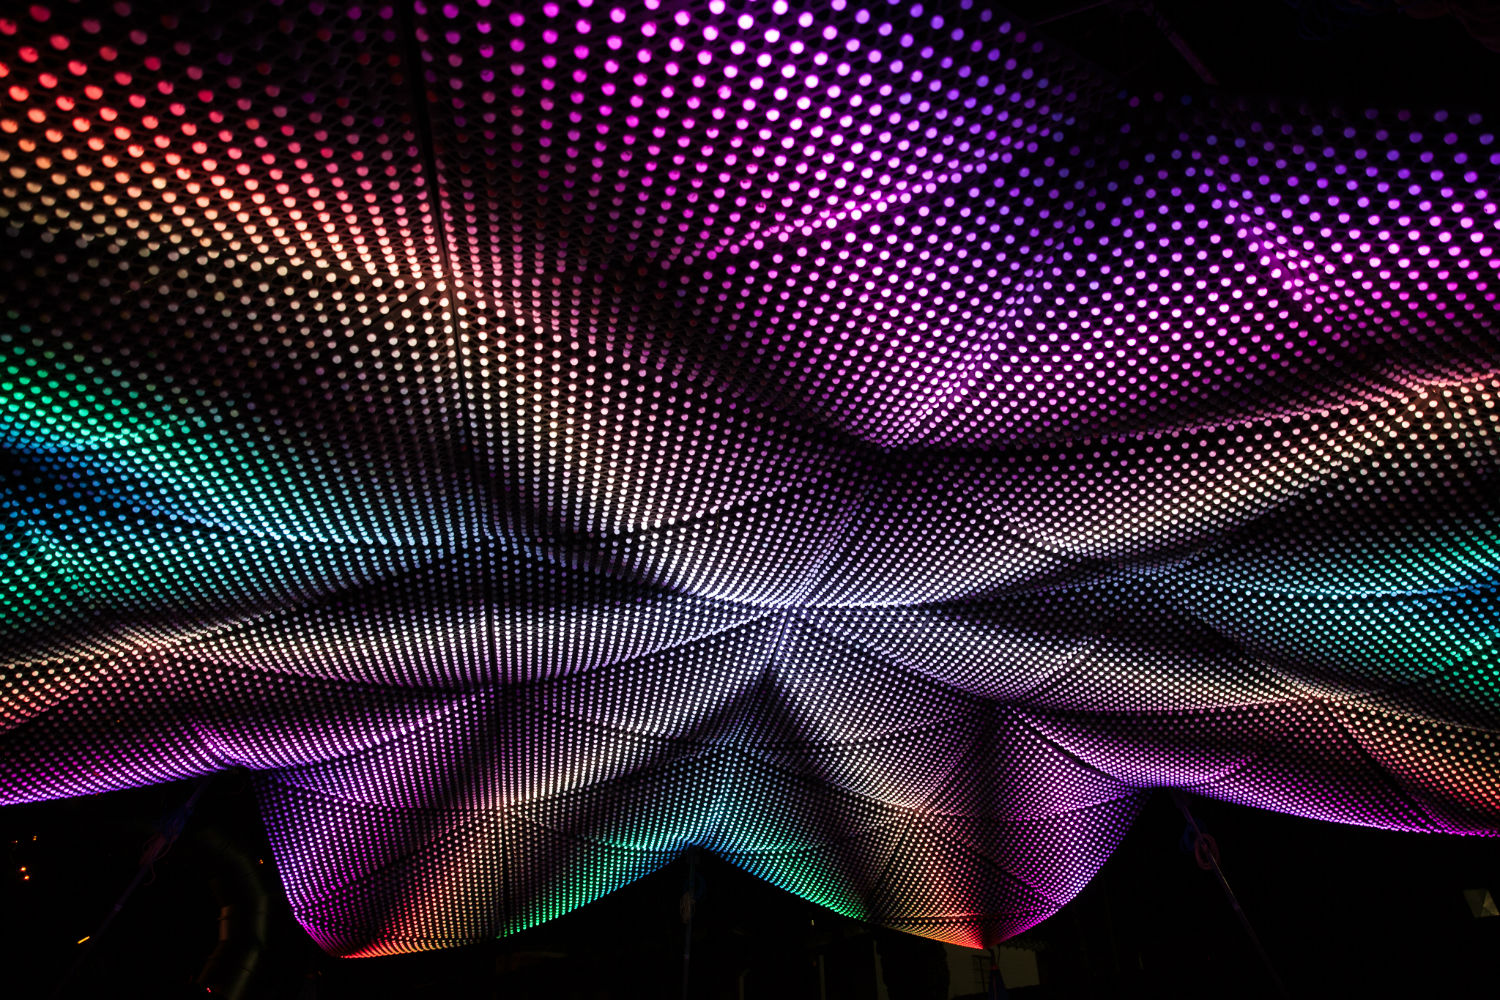 Amazing light installation